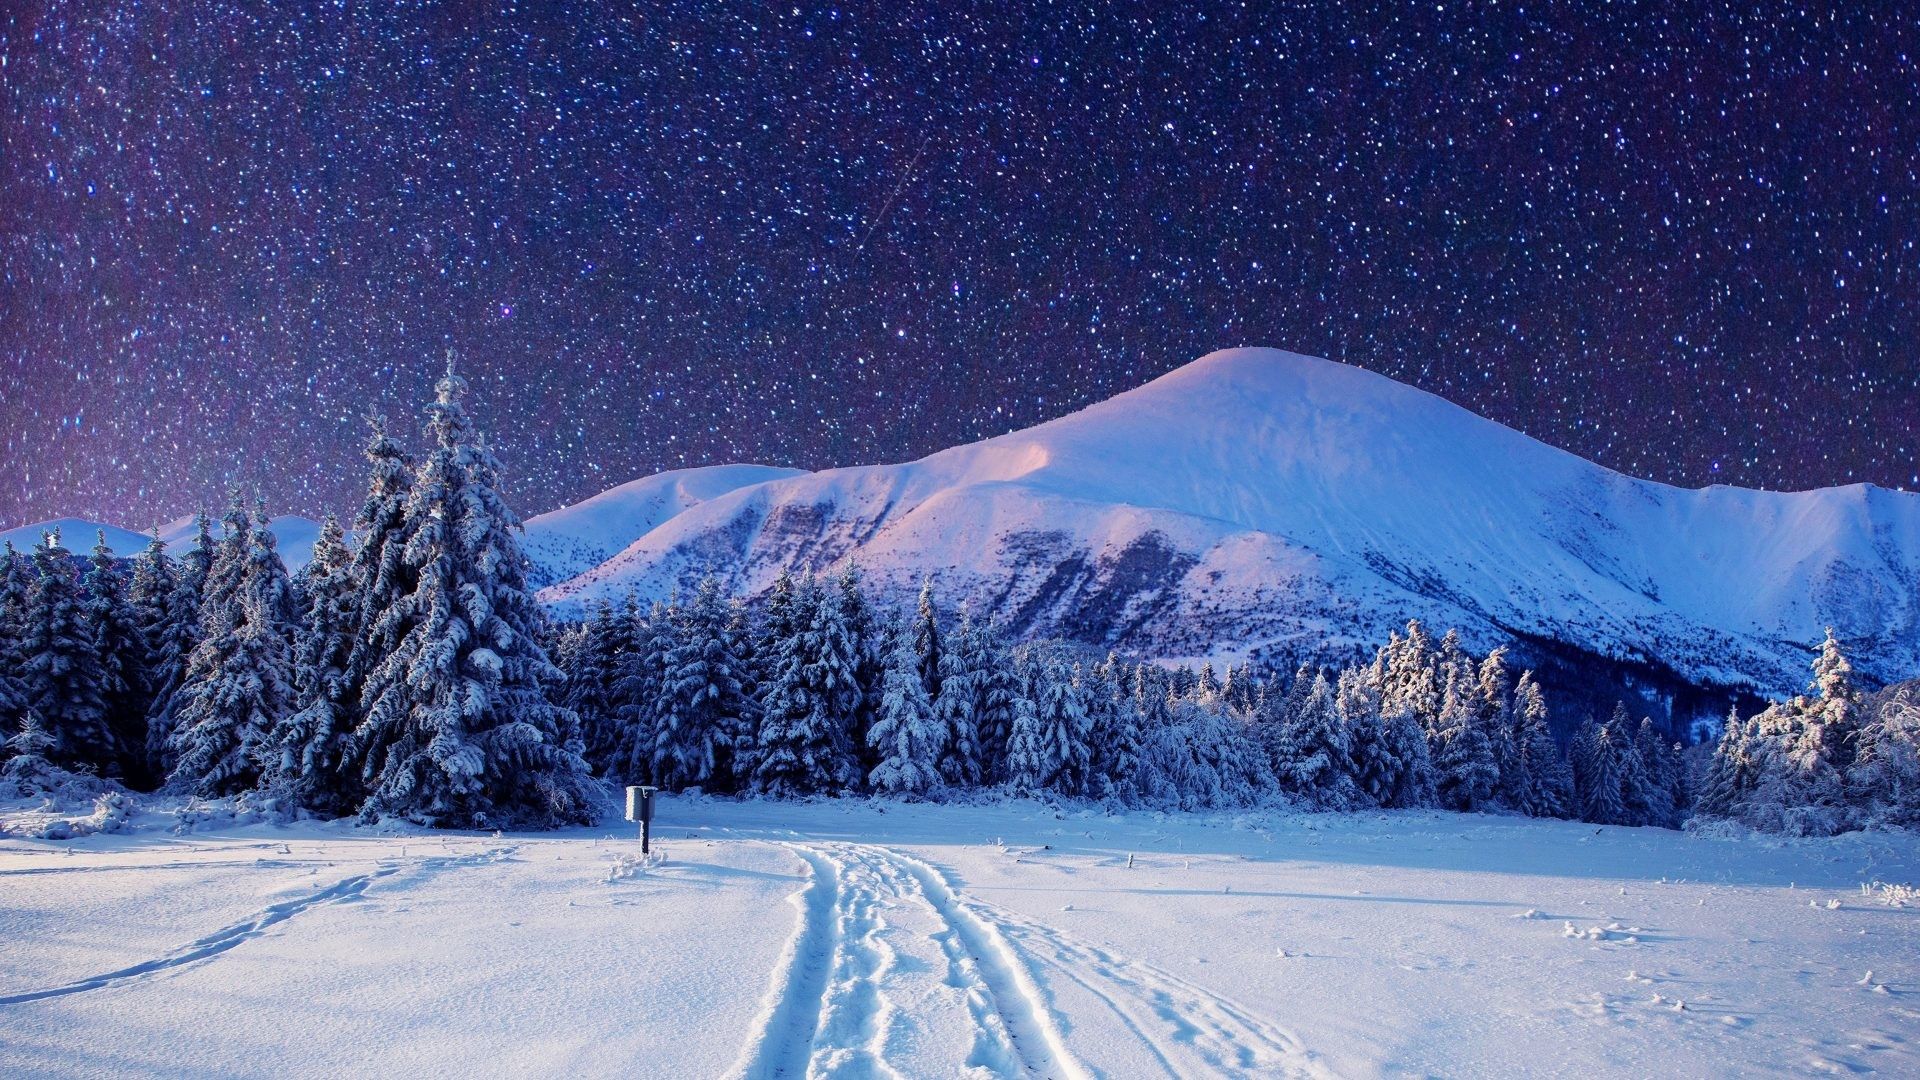 46+] HD Winter Wallpapers 1080p - WallpaperSafari